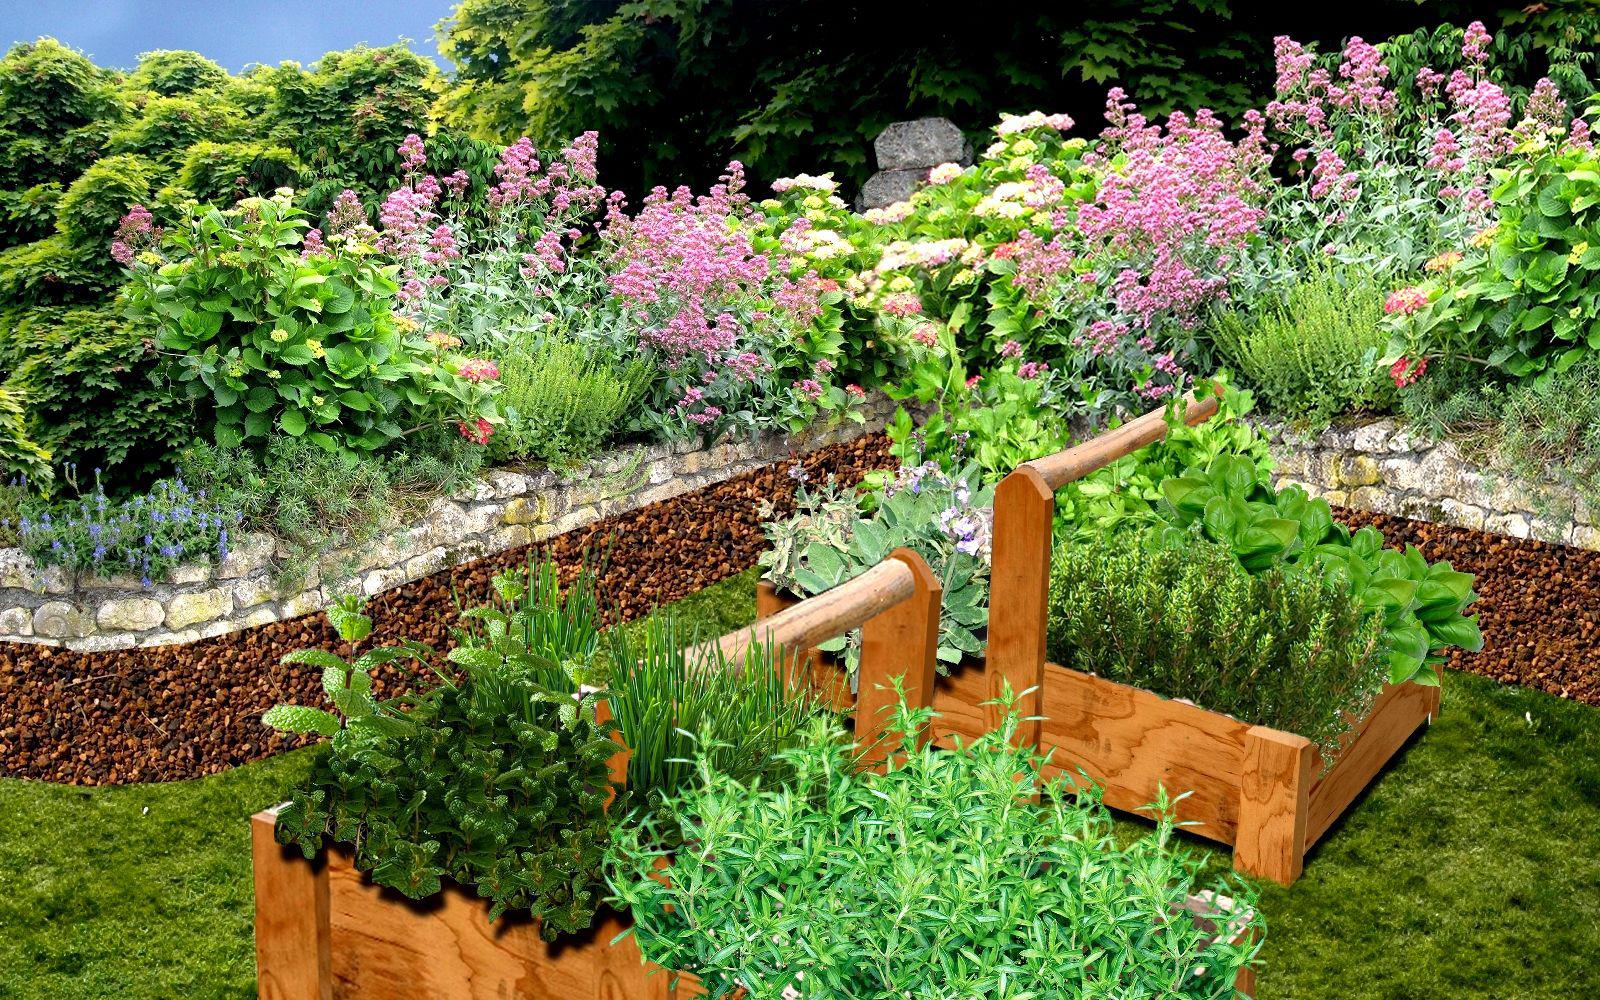 Créer un jardin de simples : aromatiques, médicinales, plantes utiles